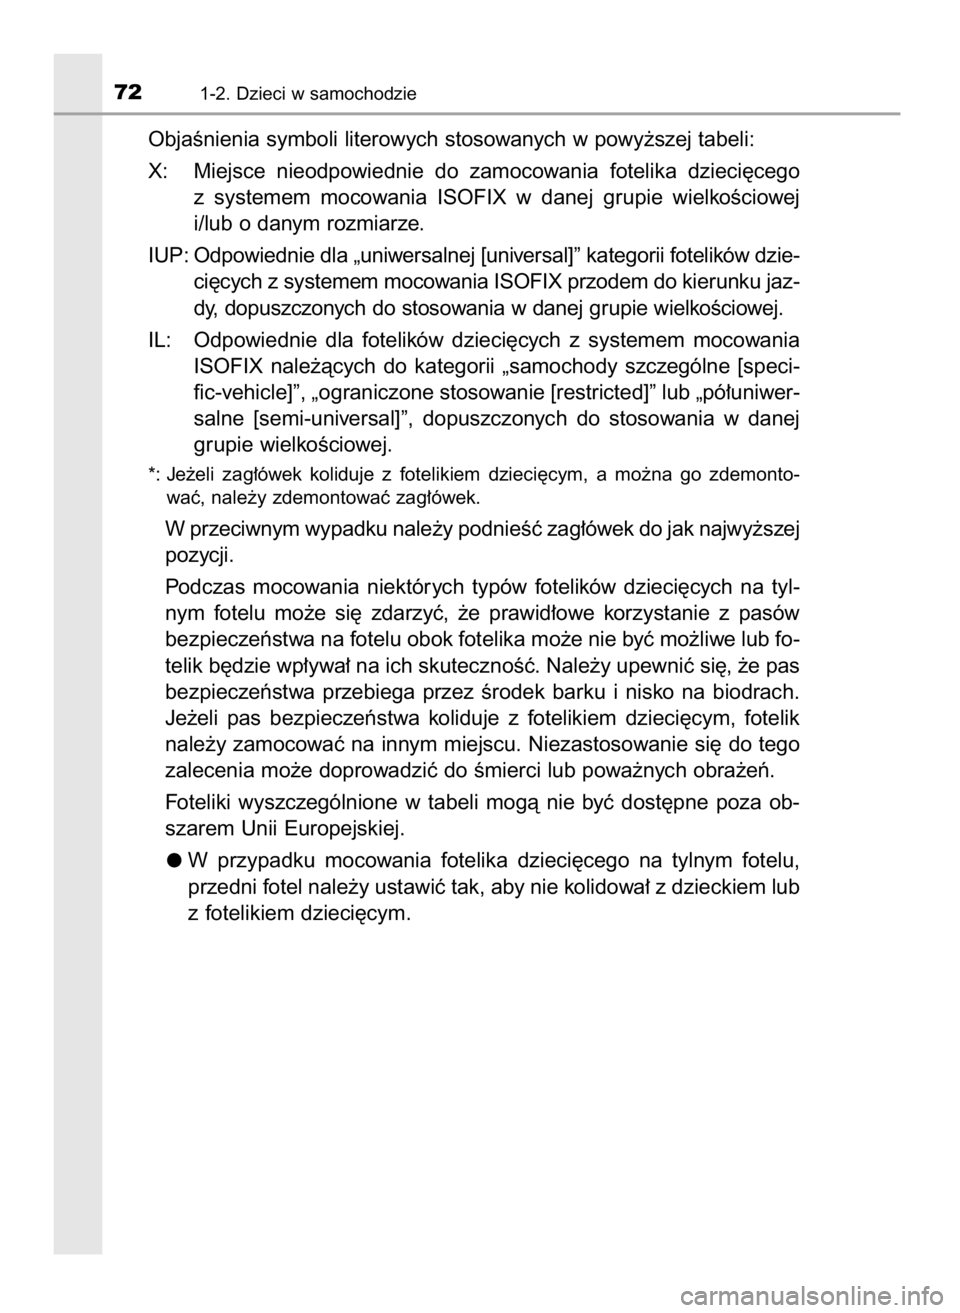 TOYOTA YARIS GRMN 2017  Instrukcja obsługi (in Polish) ObjaÊnienia symboli literowych stosowanych w powy˝szej tabeli:
X: Miejsce  nieodpowiednie  do  zamocowania  fotelika  dzieci´cego
z systemem  mocowania  ISOFIX  w danej  grupie  wielkoÊciowej
i/lu